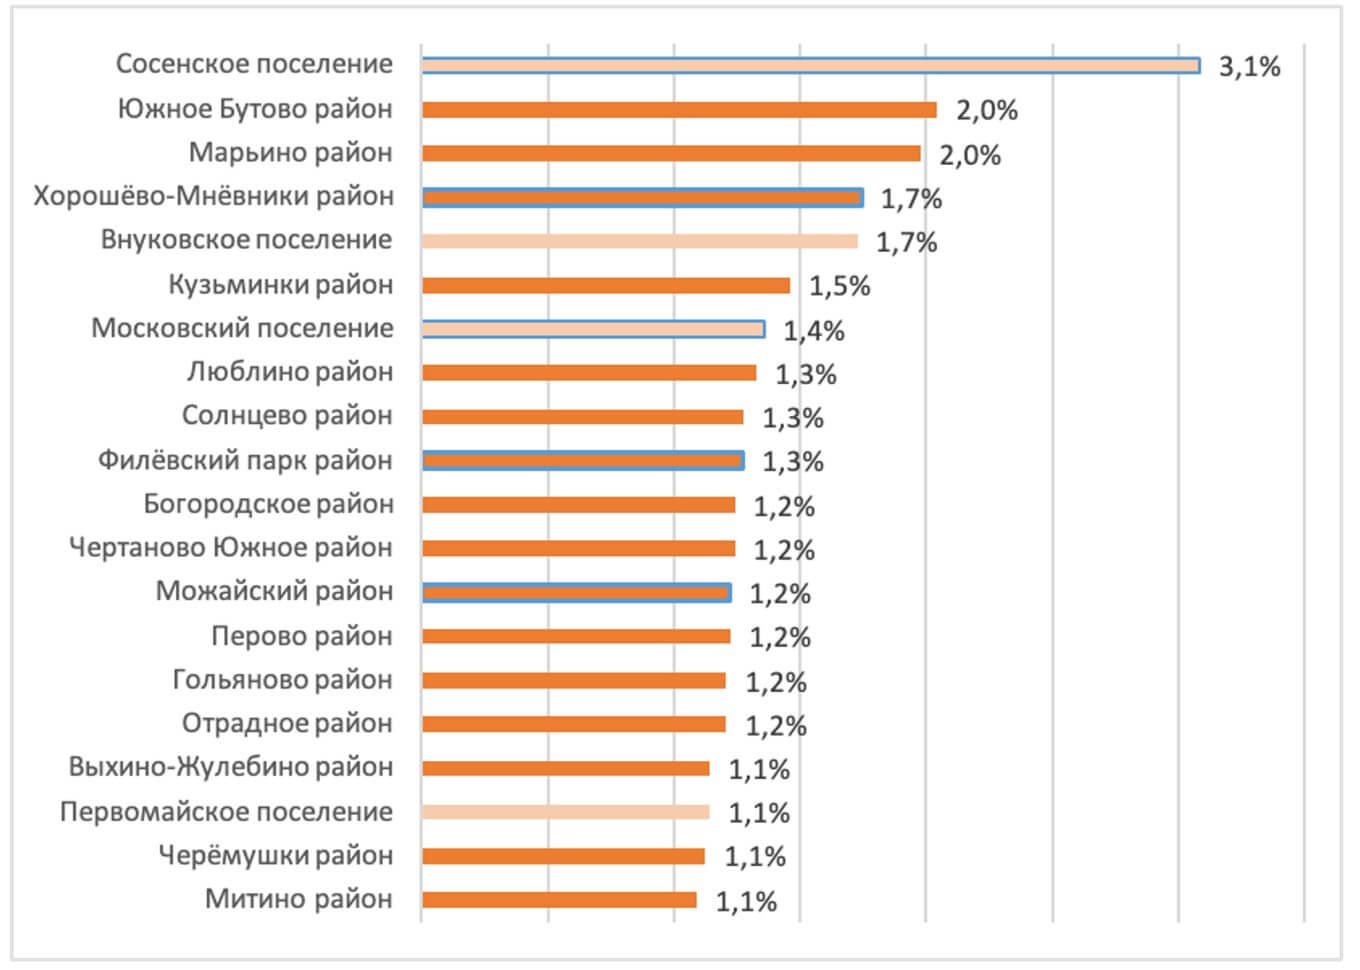 Домклик назвал самые востребованные районы Москвы для покупки жилья №2